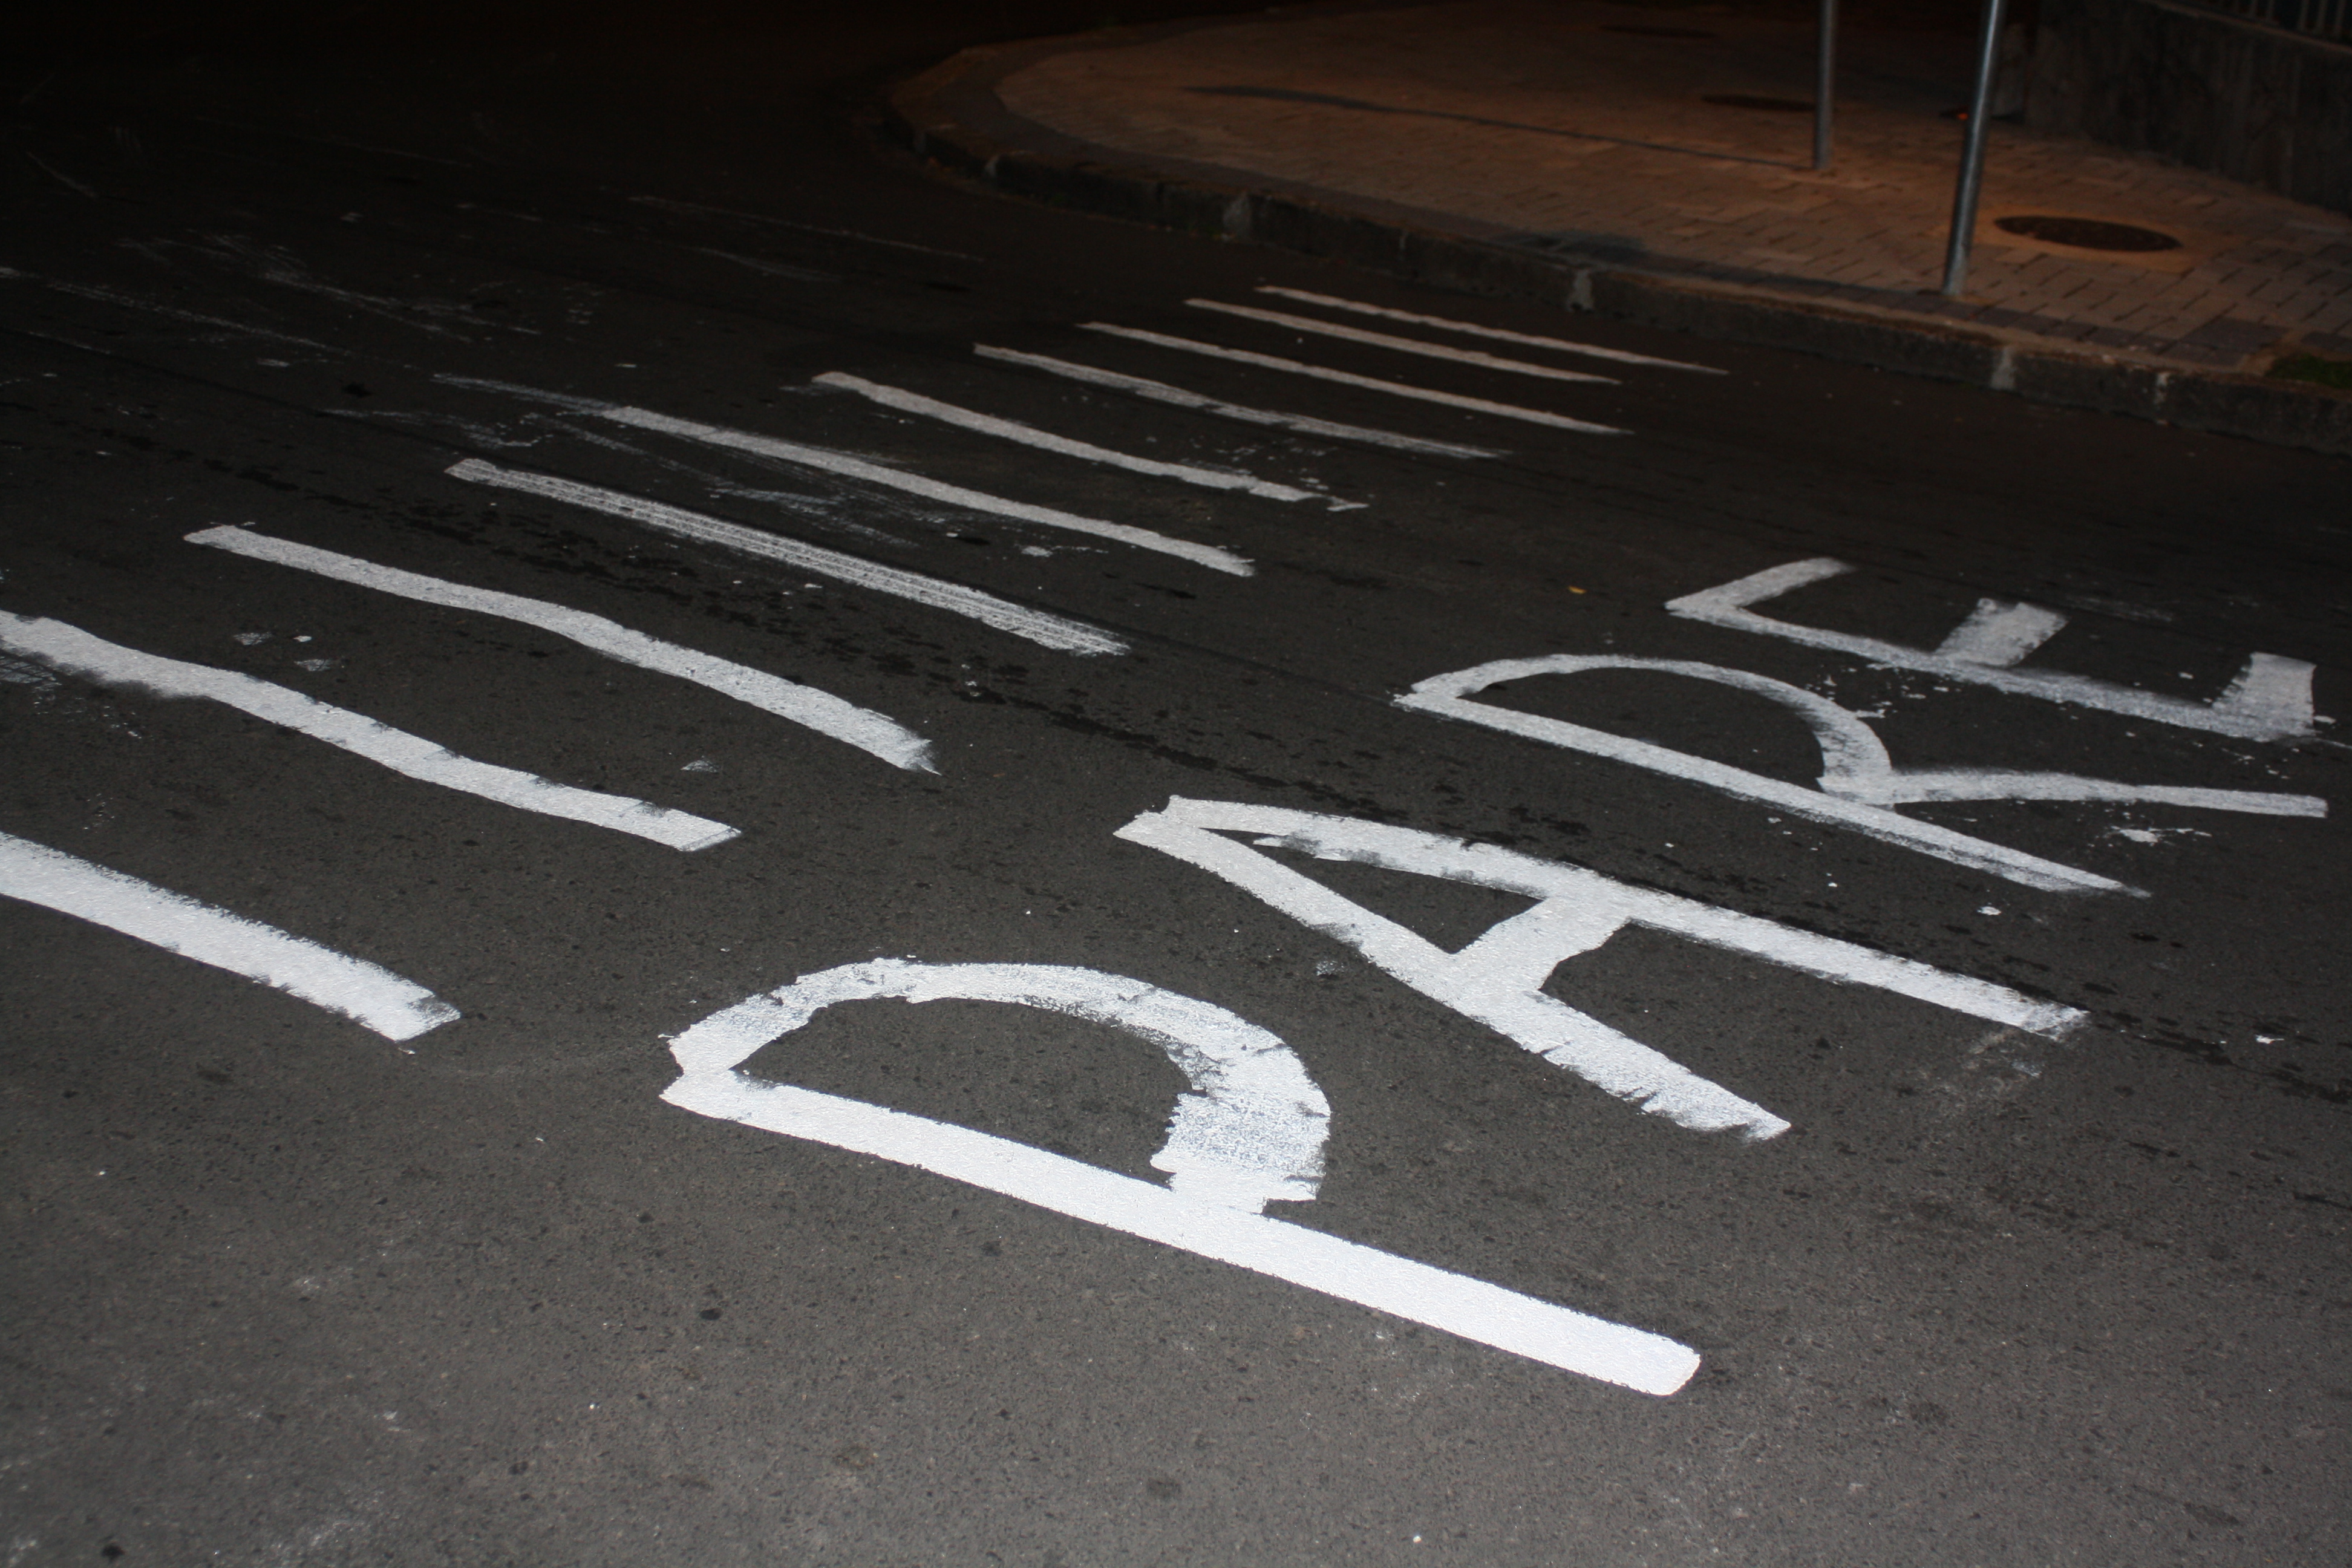  Moradora pinta faixa de pedestres no asfalto para evitar acidentes